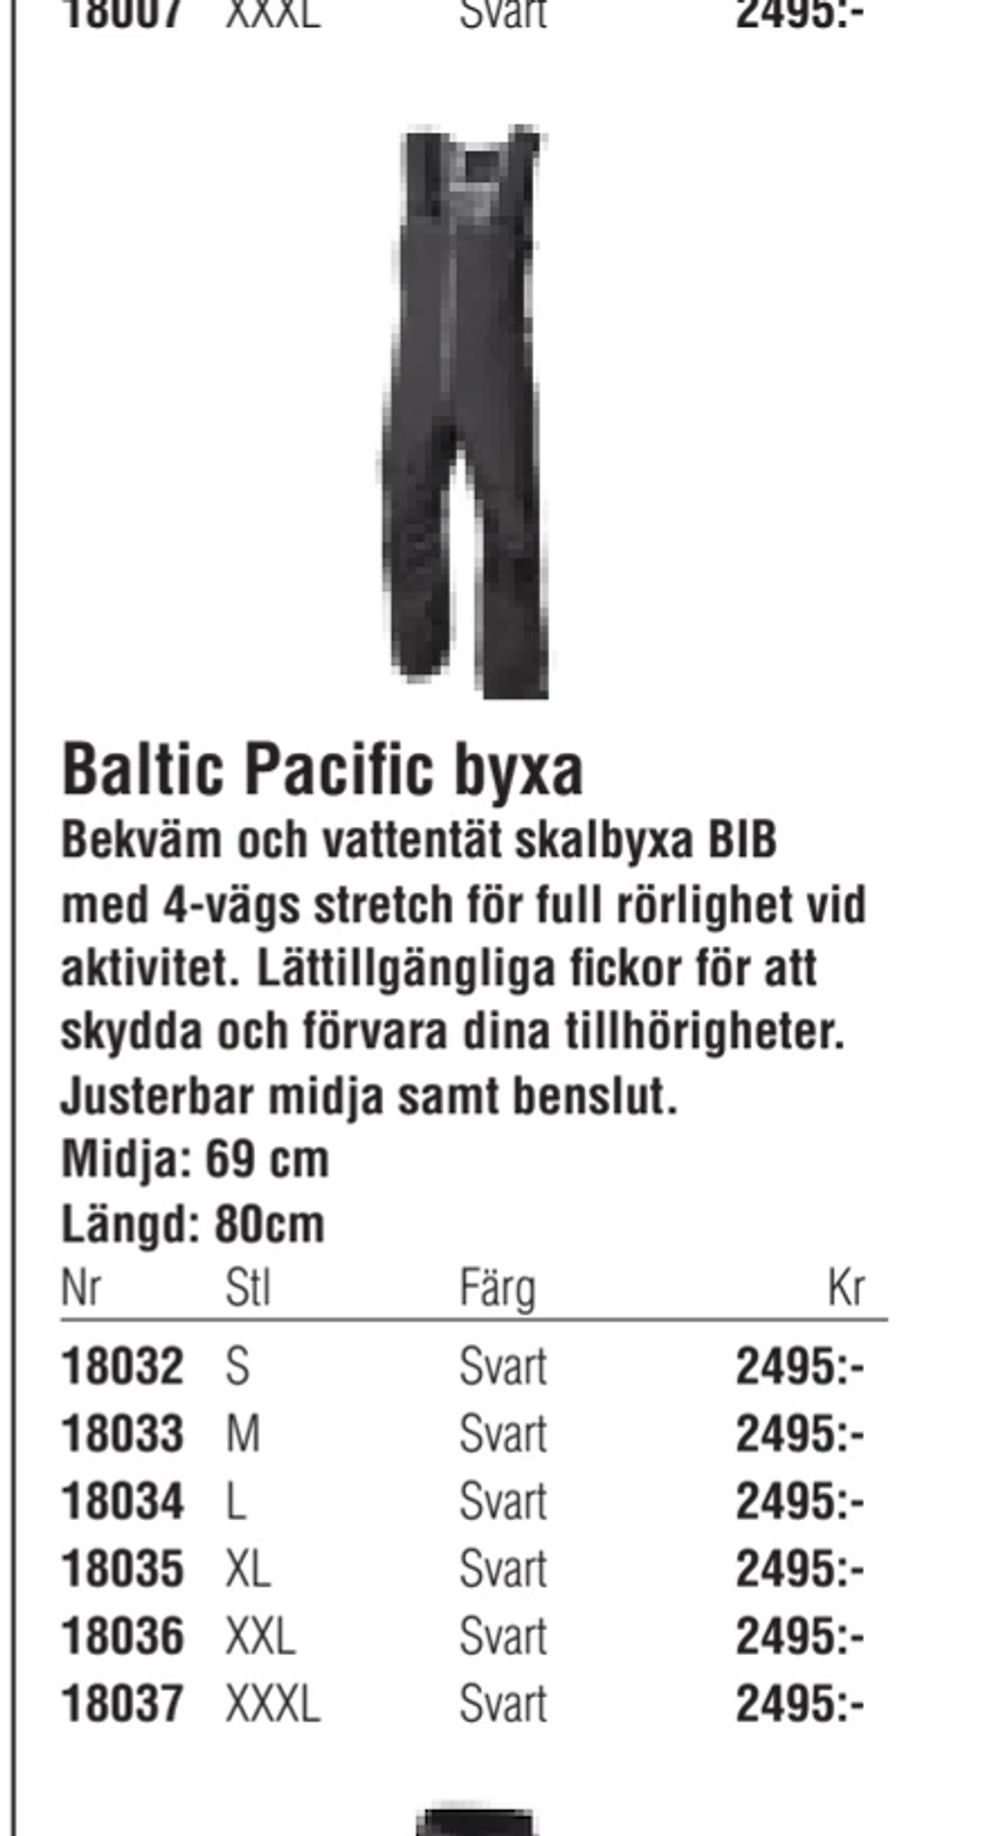 Erbjudanden på Baltic Pacific byxa från Erlandsons Brygga för 2 495 kr